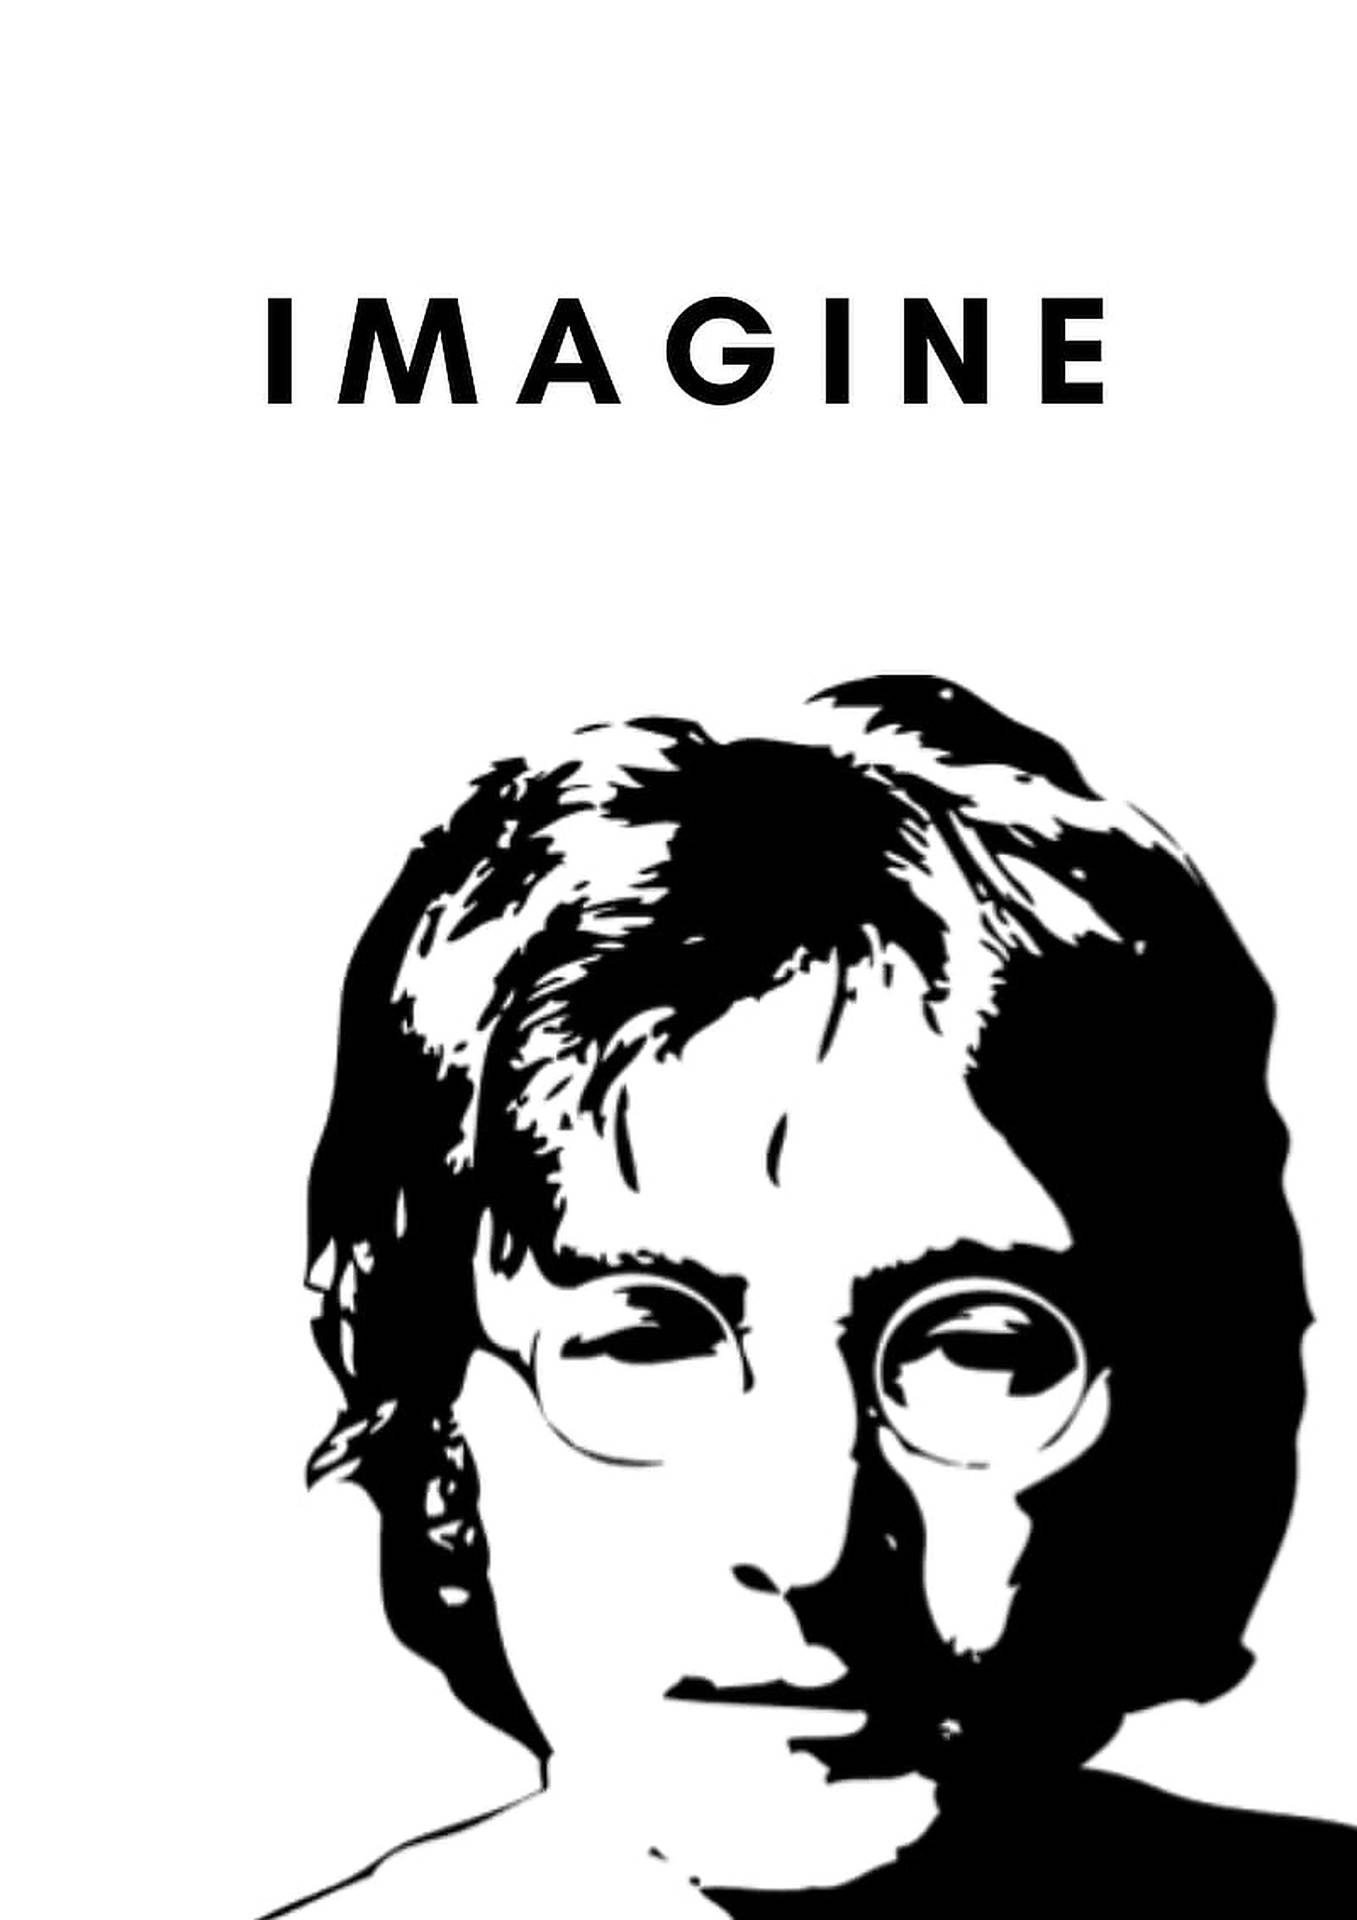 John Lennon Imagine Poster Wallpaper